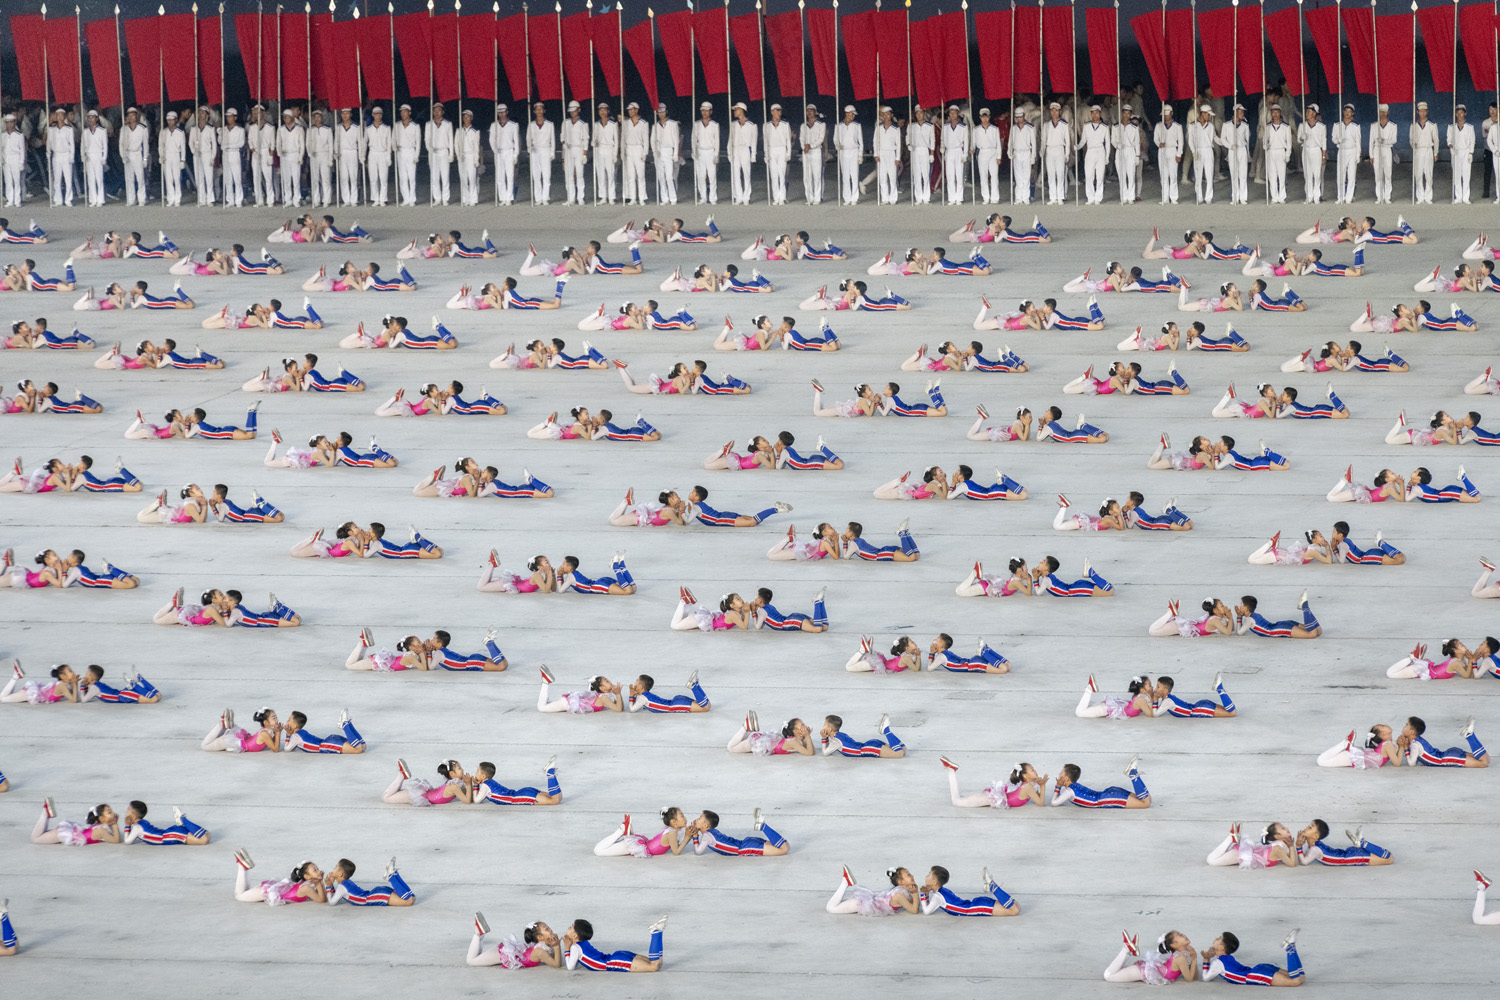 North Korean children doing gymnastics